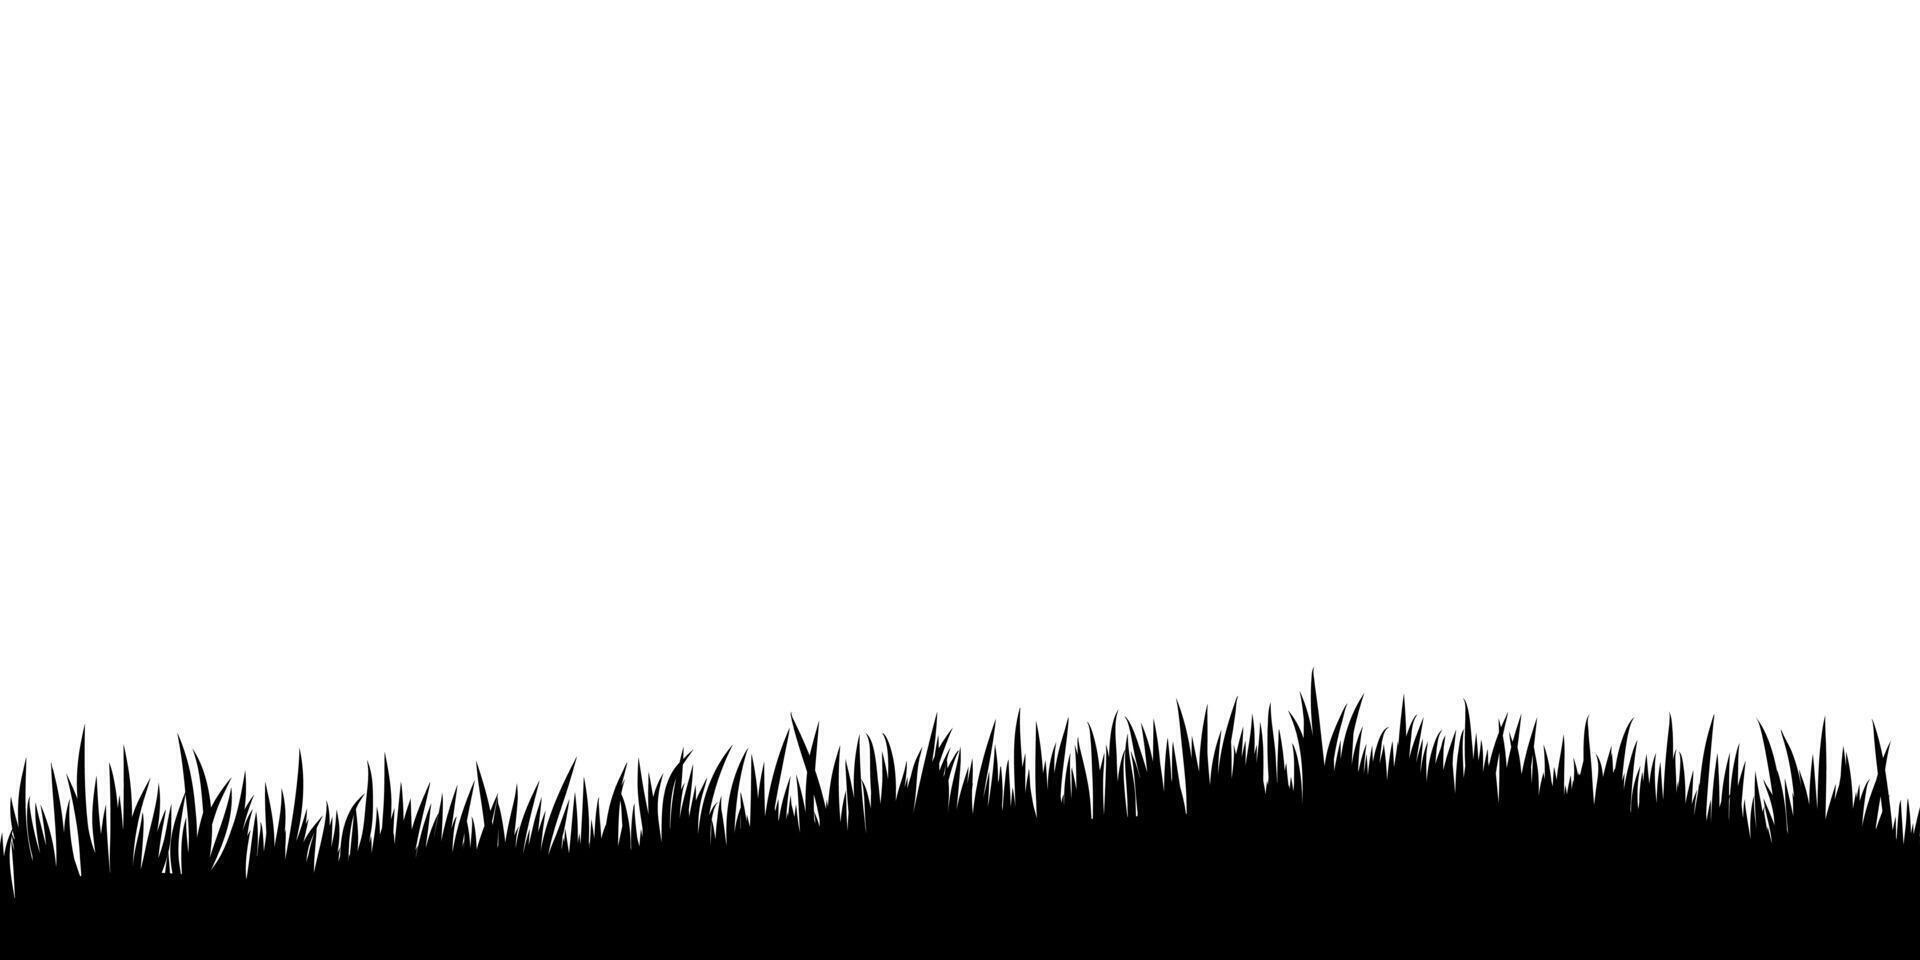 svart gräs silhuett gräns, illsutration baner vektor